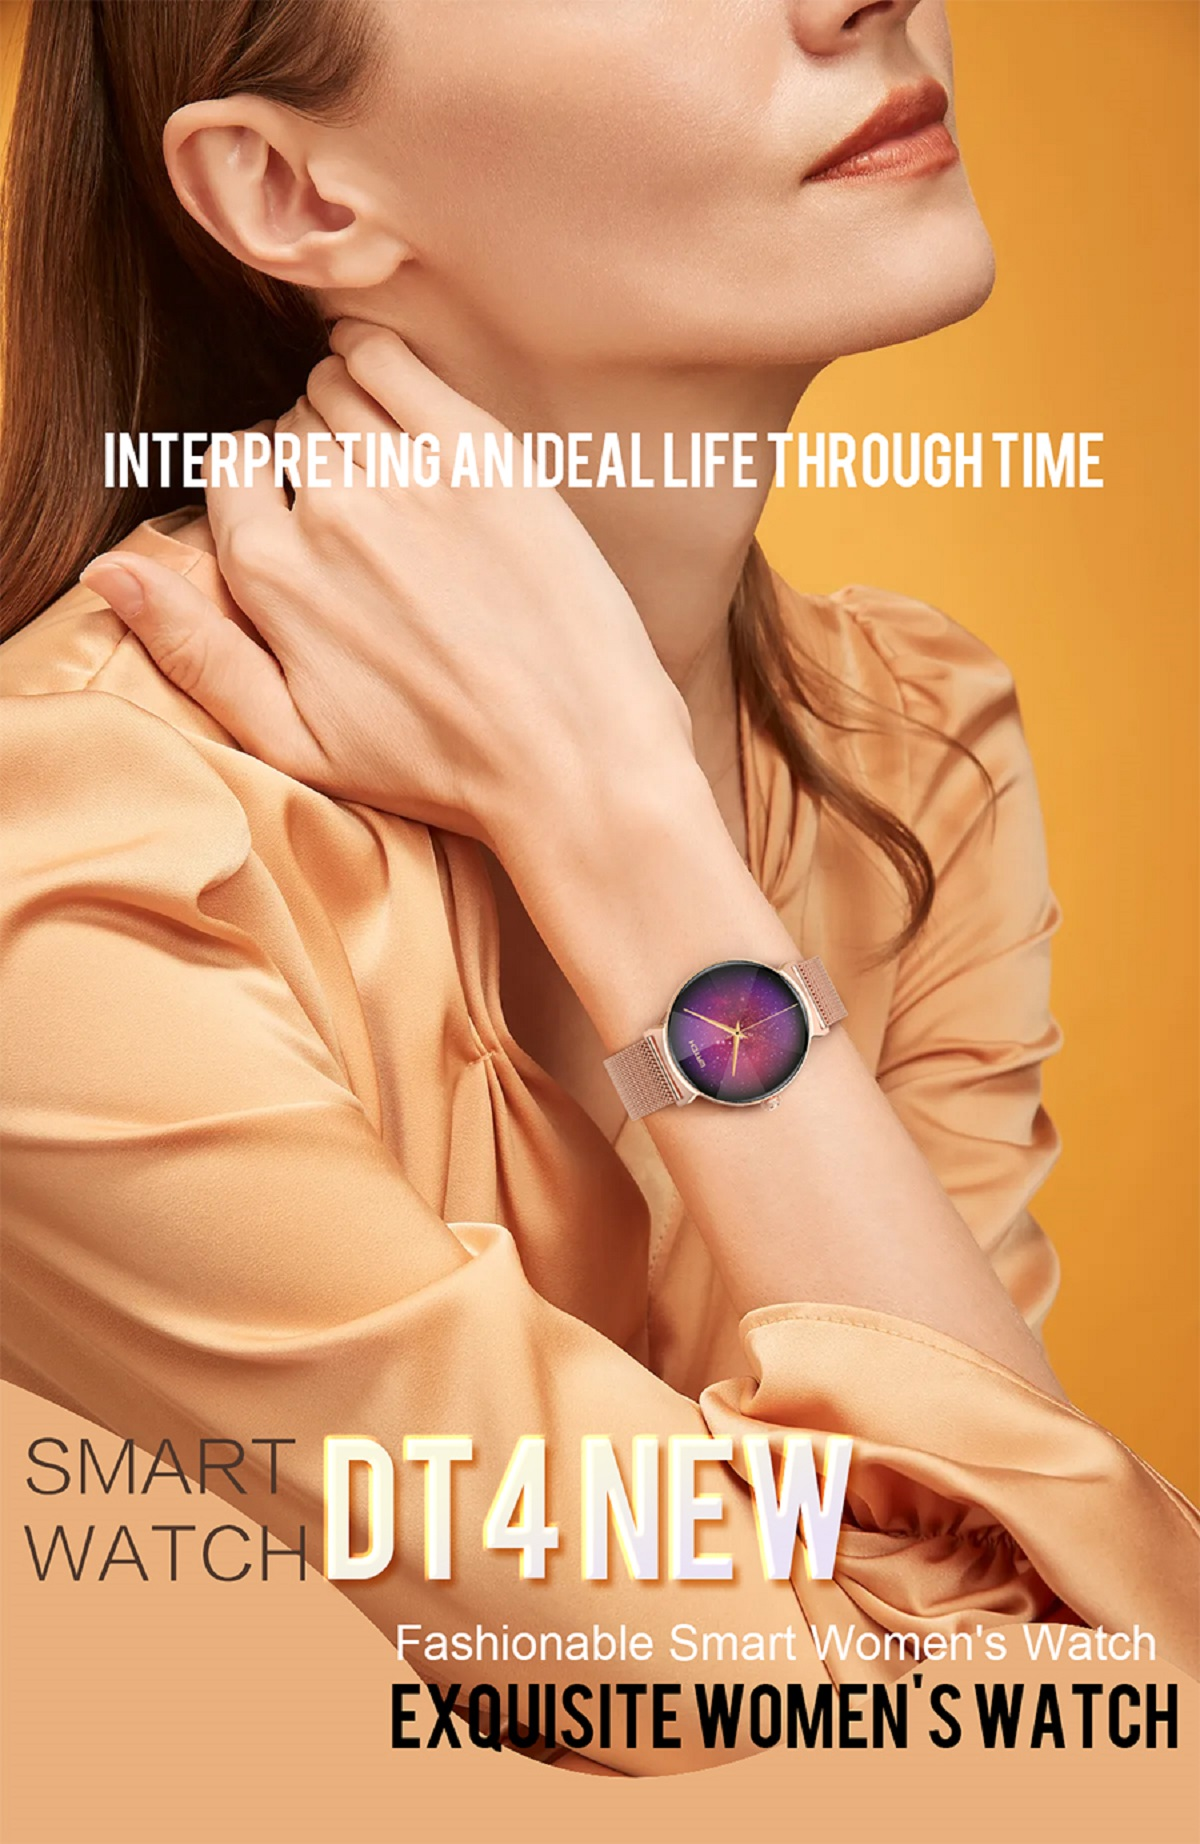 BT-Anruf Silikon, MIRUX Gold Pink Rund Smartwatch 240mm, Aktivitätstracker DT4New